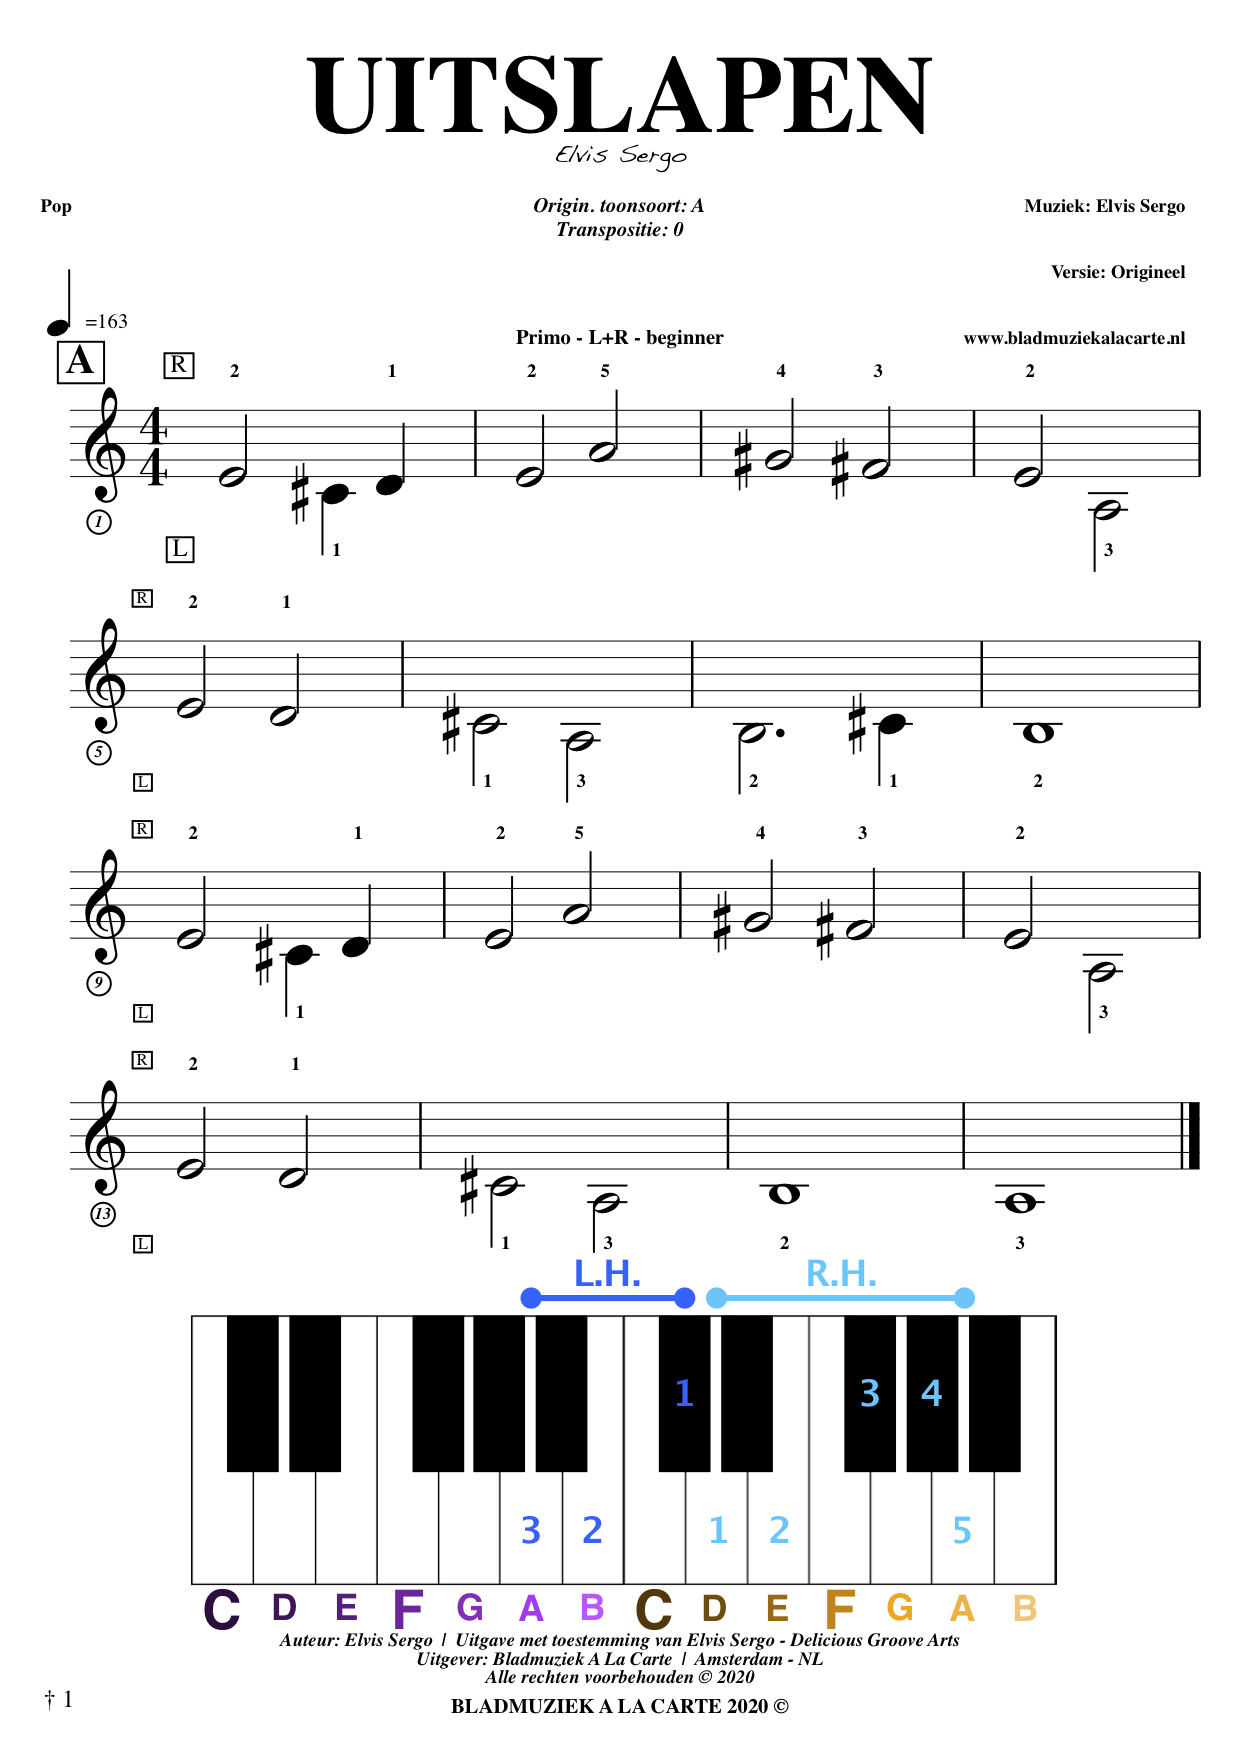 Free sheetmusic for keyboards and theory - Sheetmusic